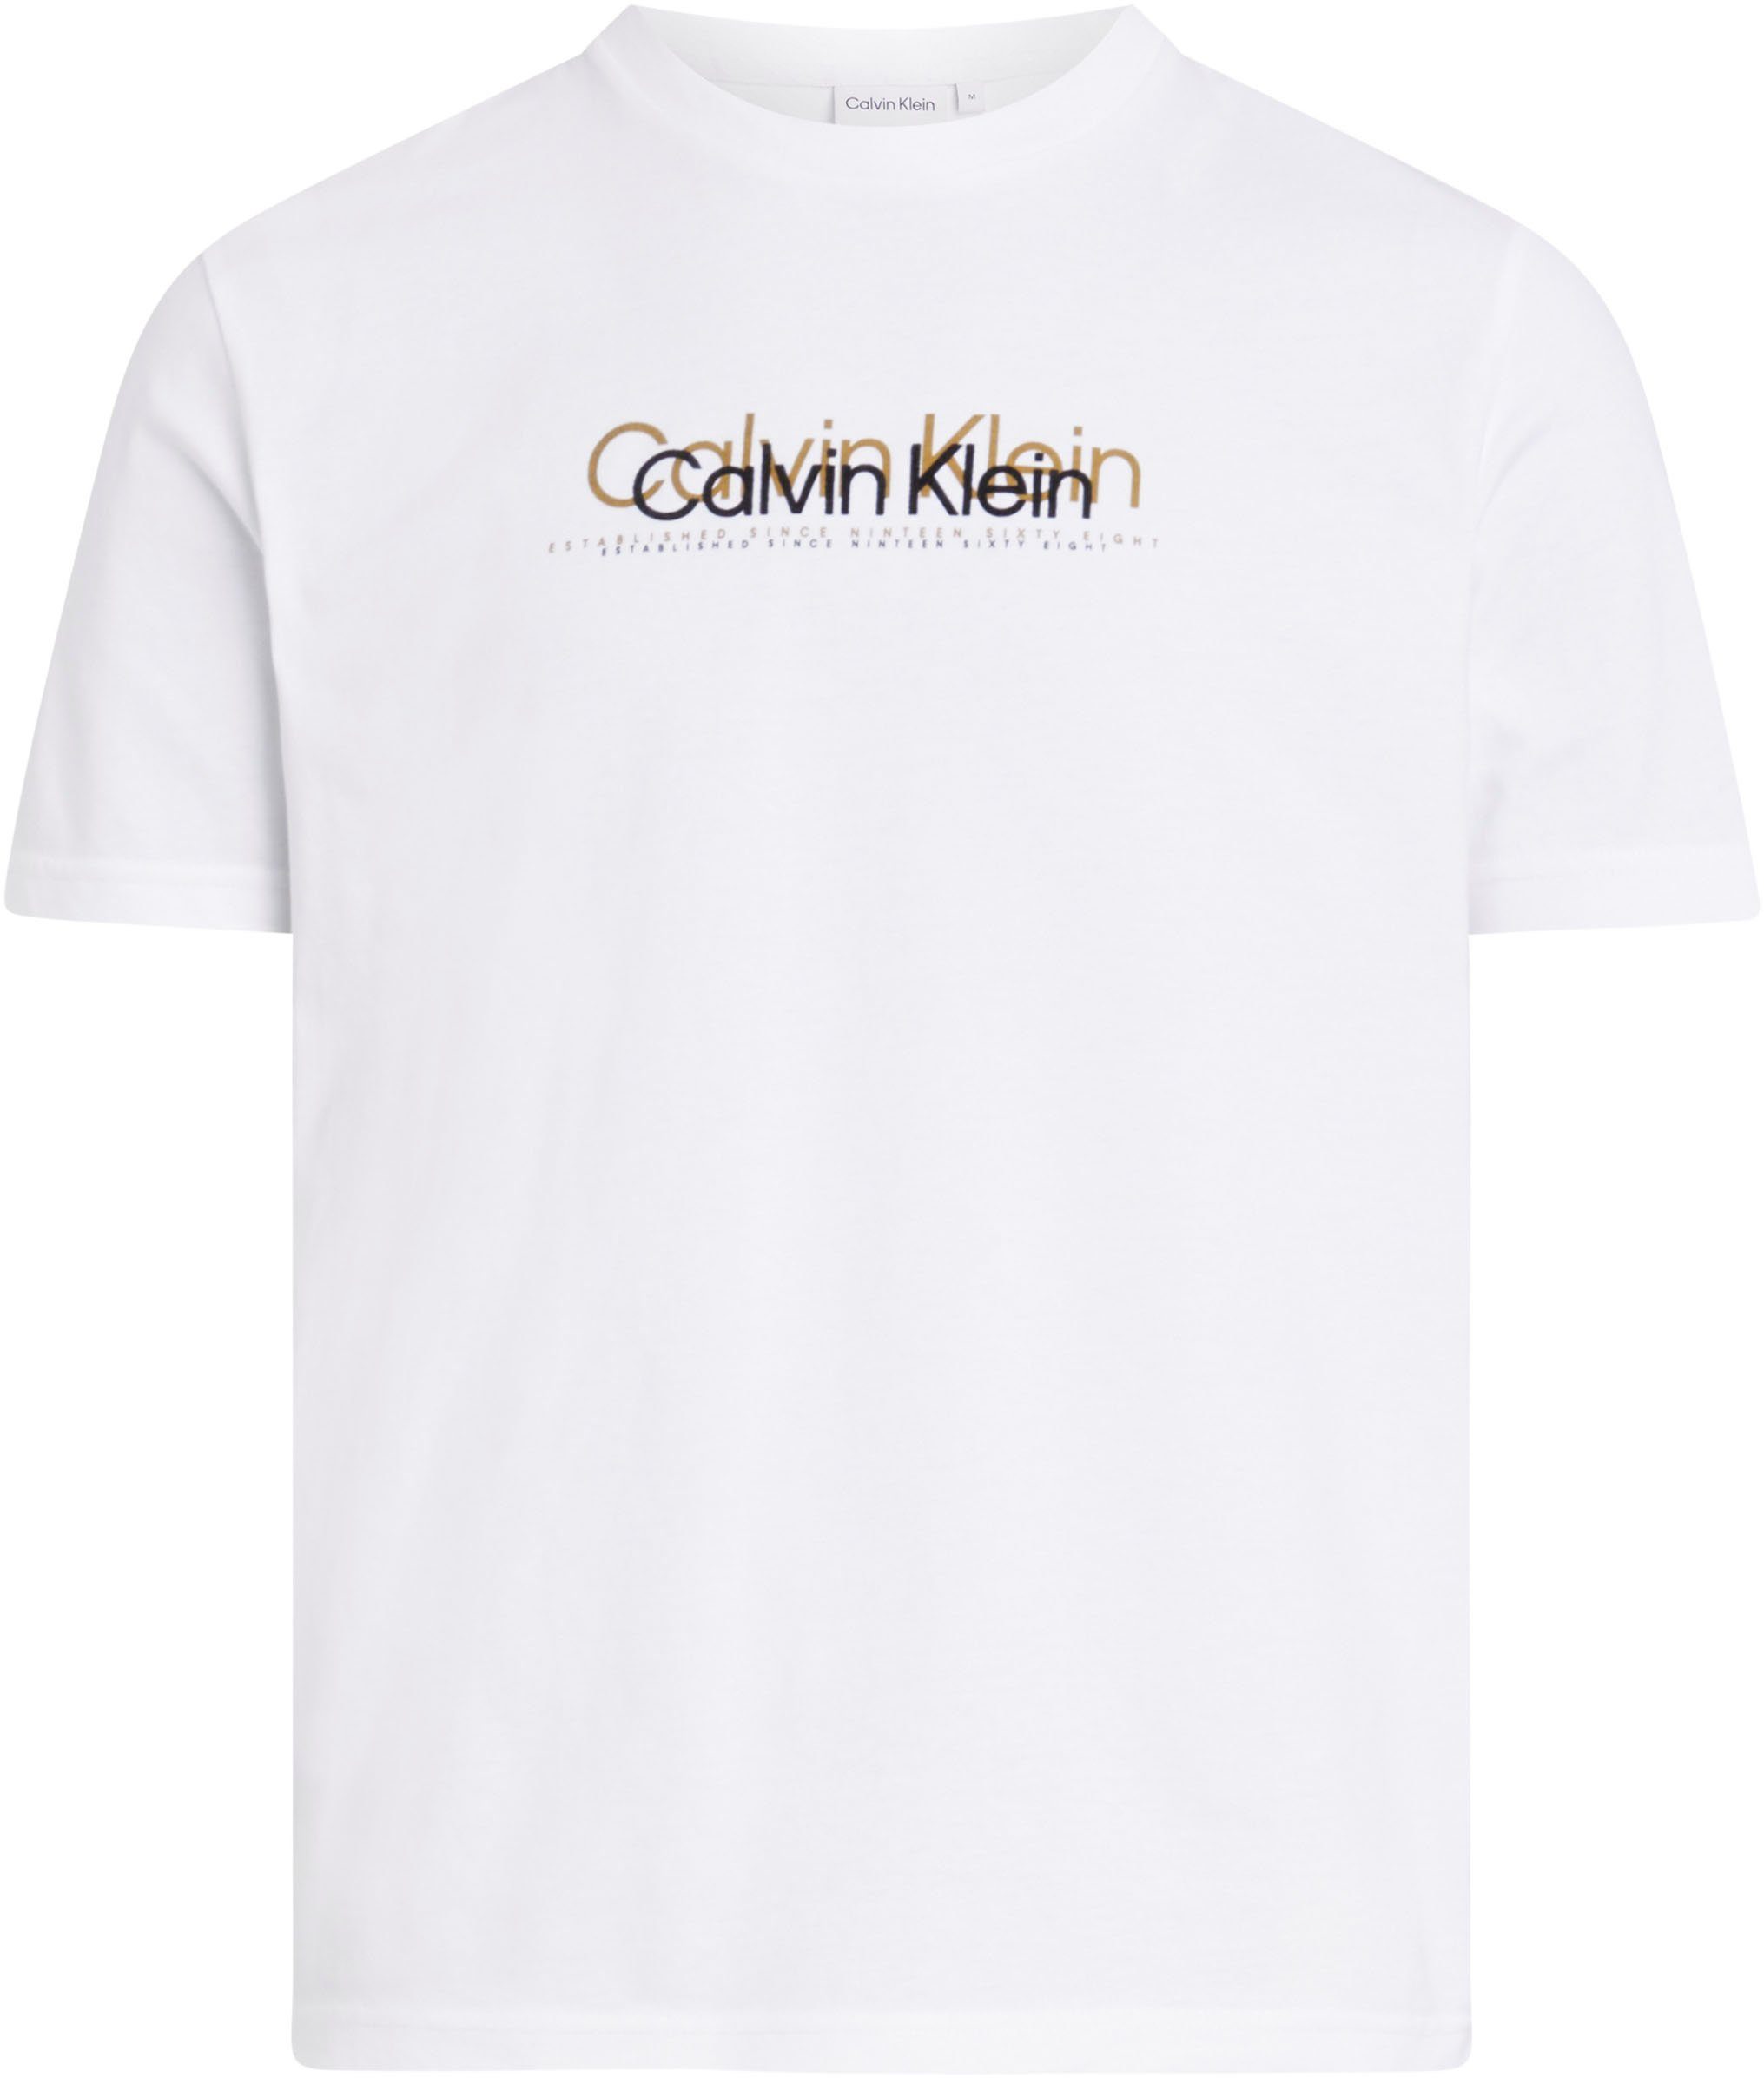 Calvin Klein T-Shirt DOUBLE LOGO mit White T-SHIRT FLOCK Bright Markenlabel